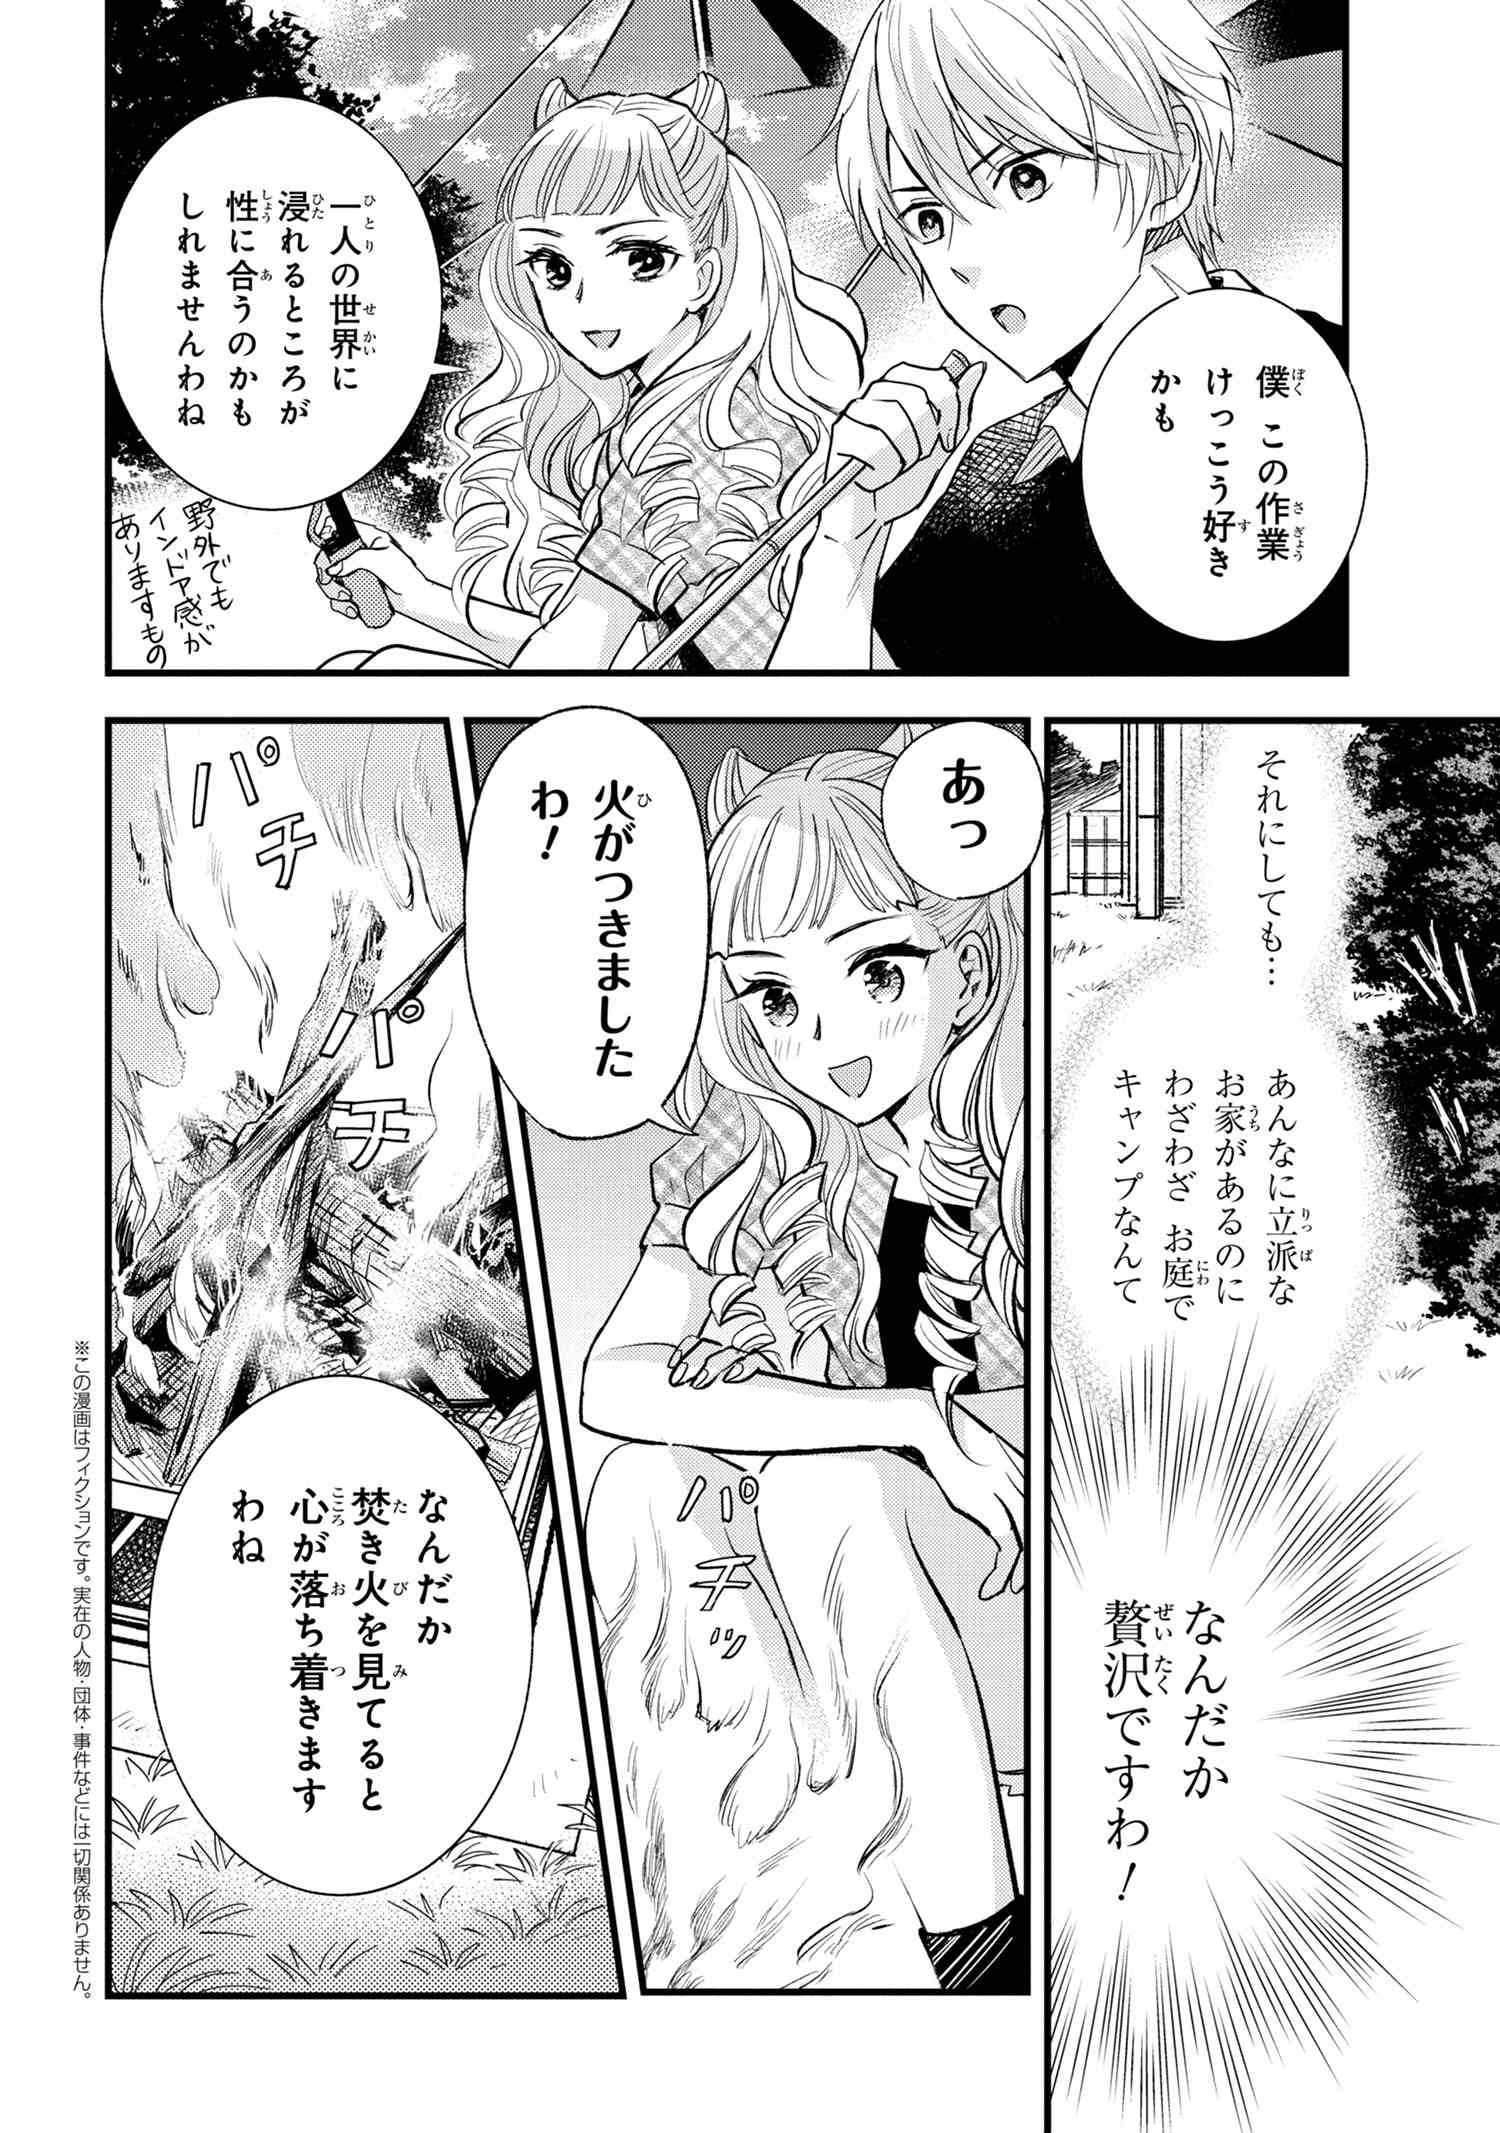 Reiko no Fuugi Akuyaku Reijou to Yobarete imasu ga, tada no Binbou Musume desu - Chapter 12.5 - Page 1